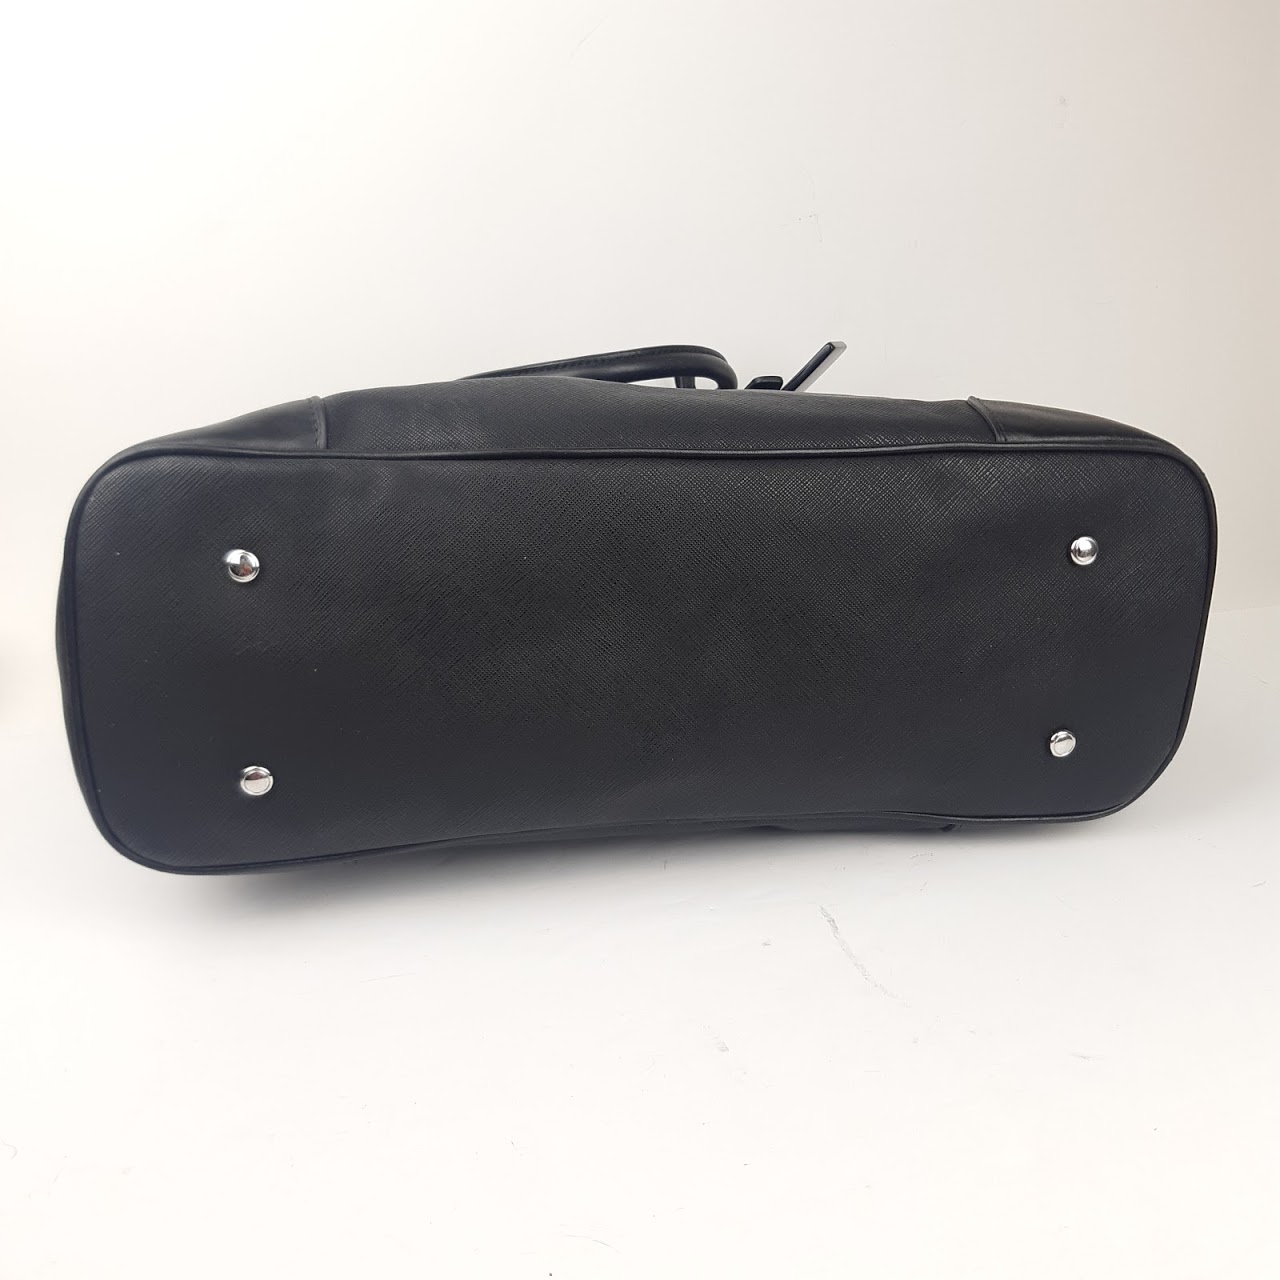 Tumi Saffiano Leather Laptop Bag